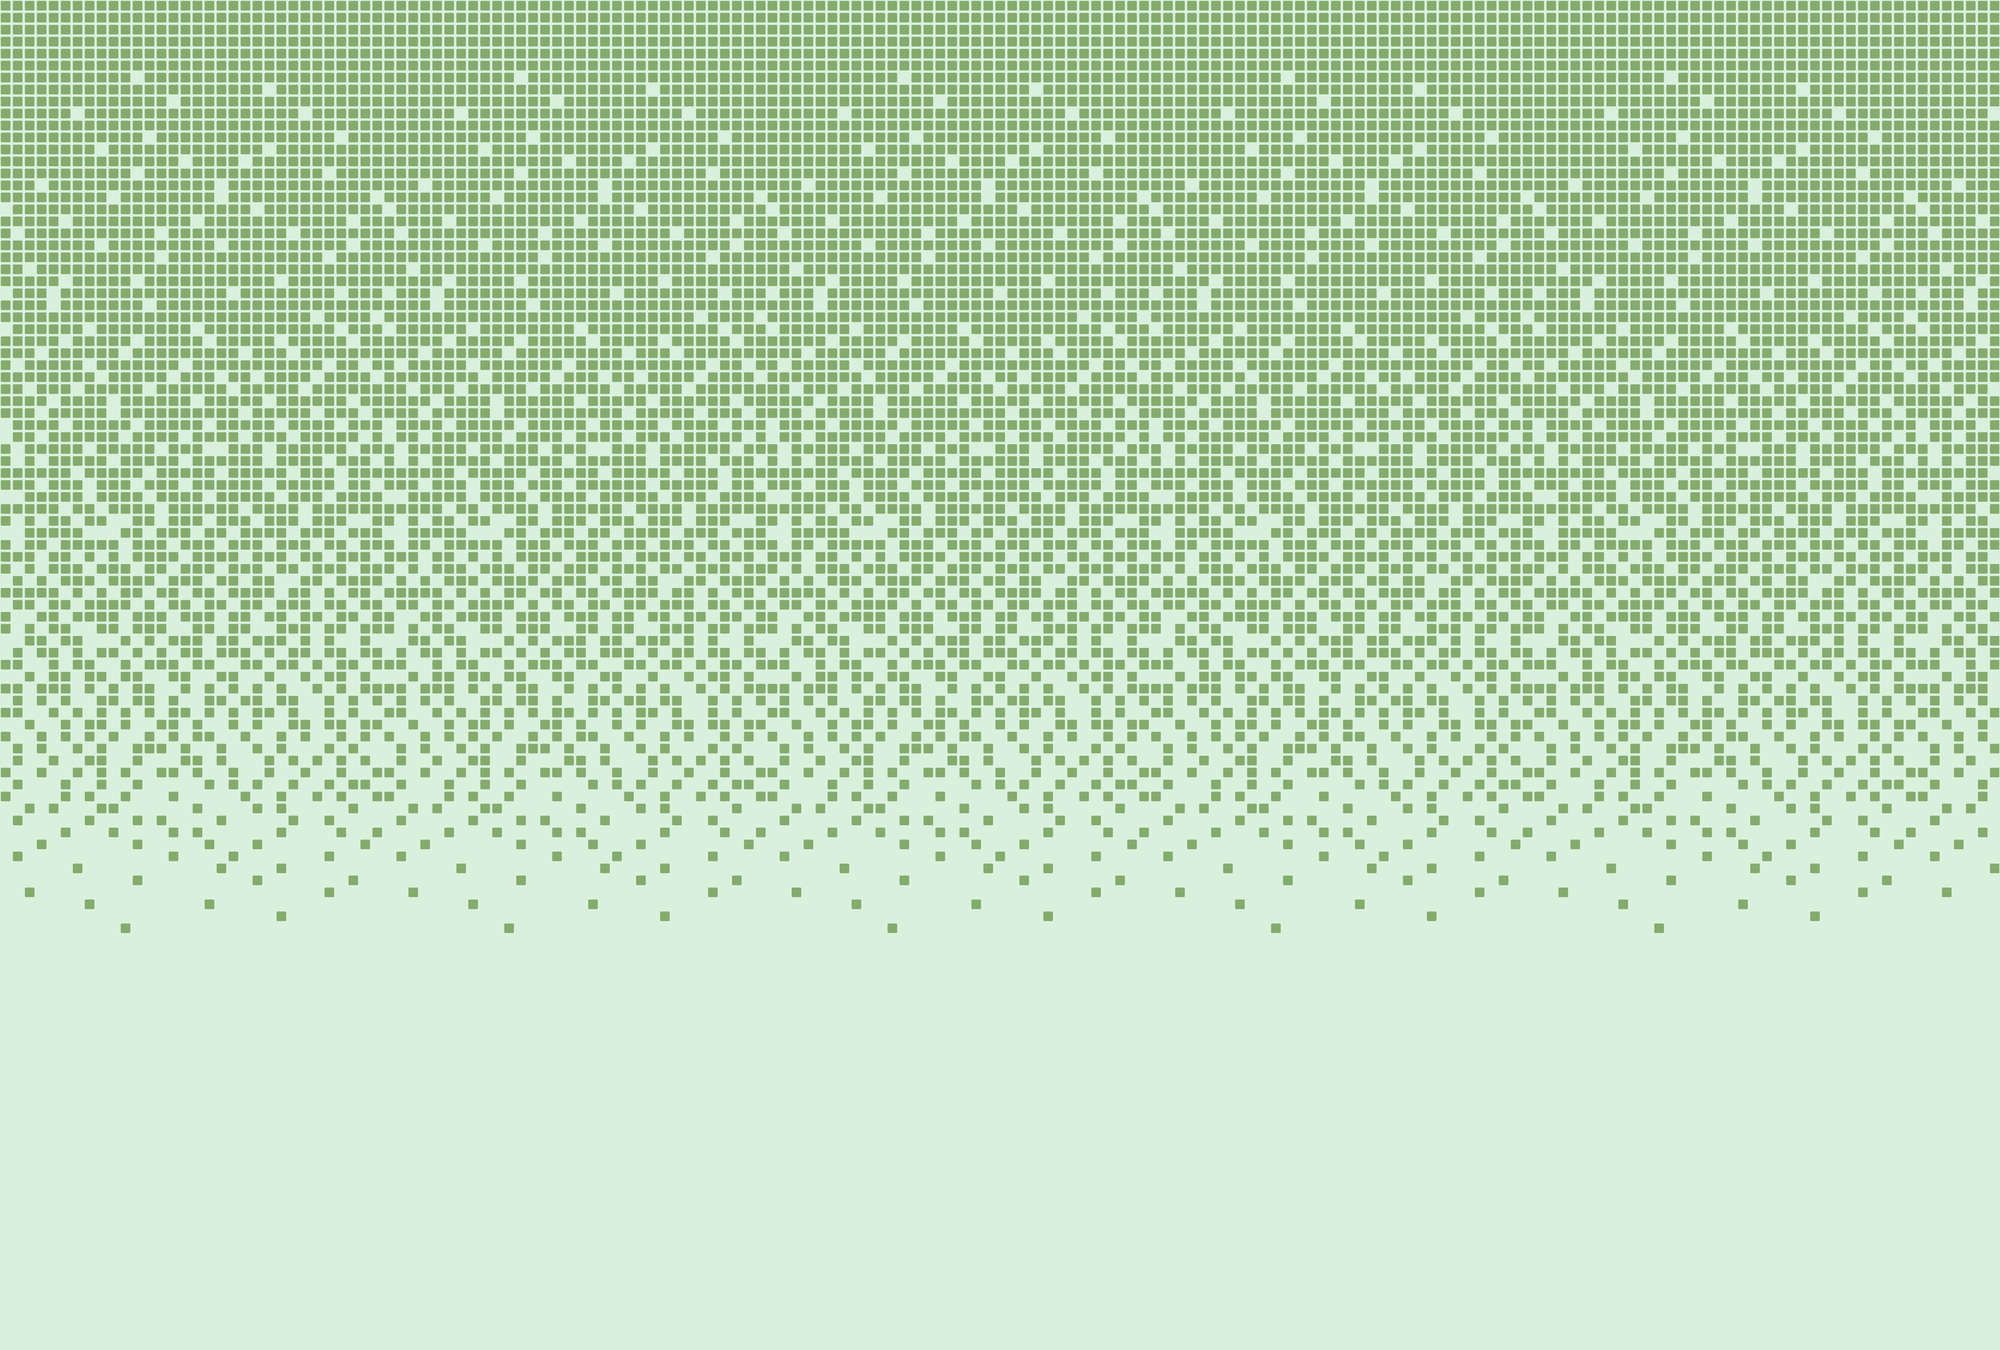             Digital behang »pixi mint« - Mozaïekpatroon met pixelstijl - Groen | Licht structuurvlies
        